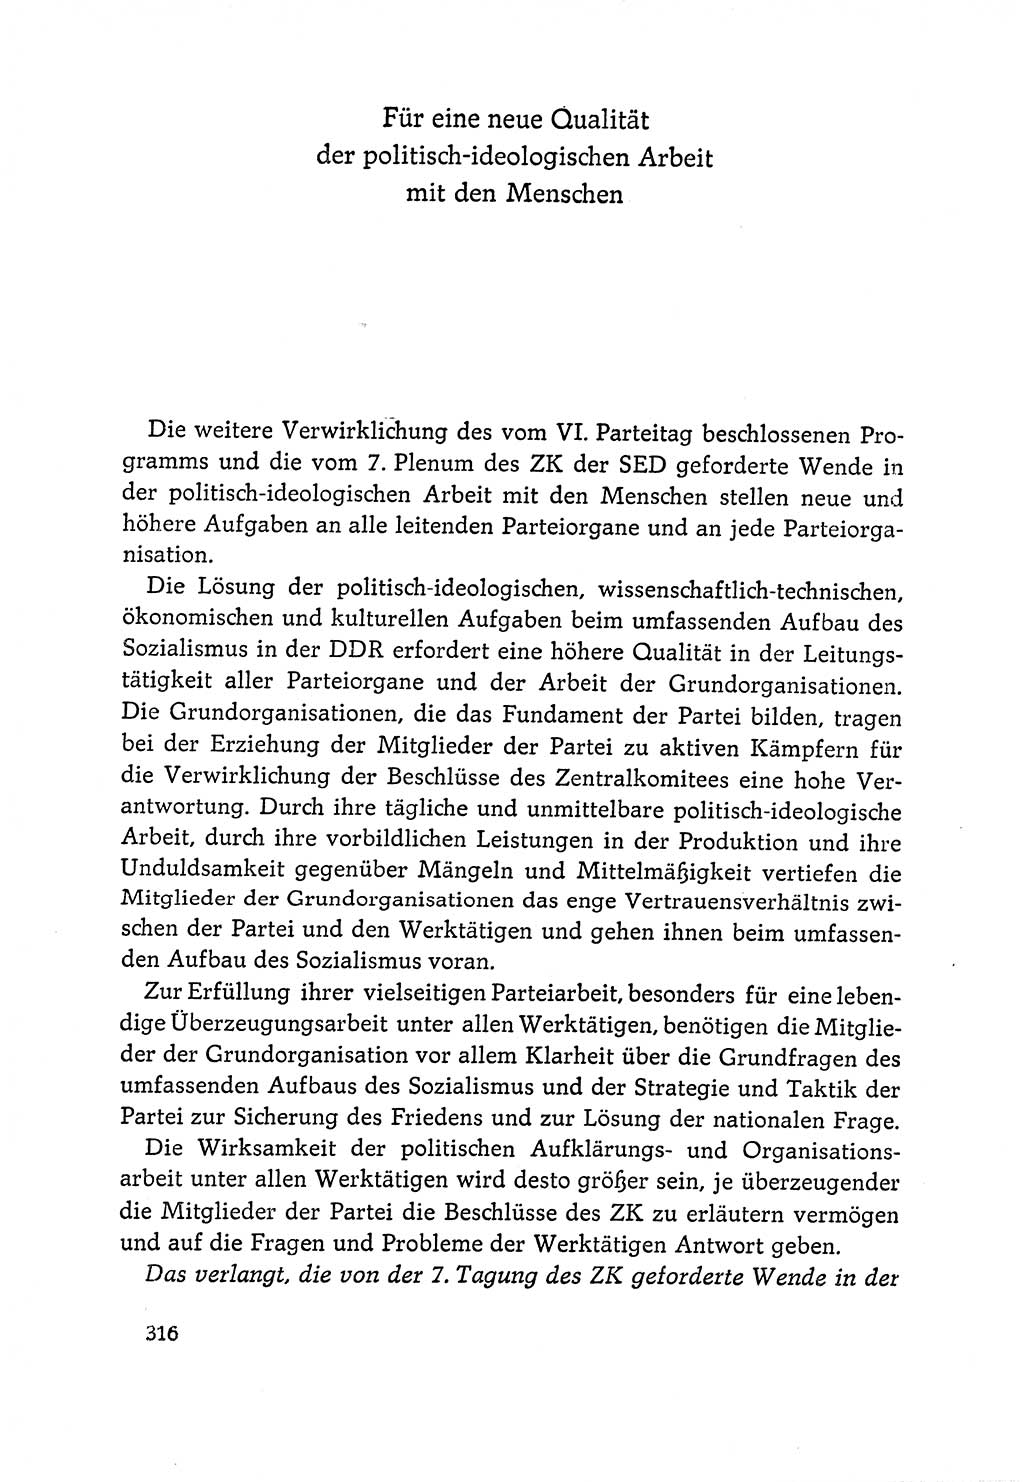 Dokumente der Sozialistischen Einheitspartei Deutschlands (SED) [Deutsche Demokratische Republik (DDR)] 1964-1965, Seite 316 (Dok. SED DDR 1964-1965, S. 316)